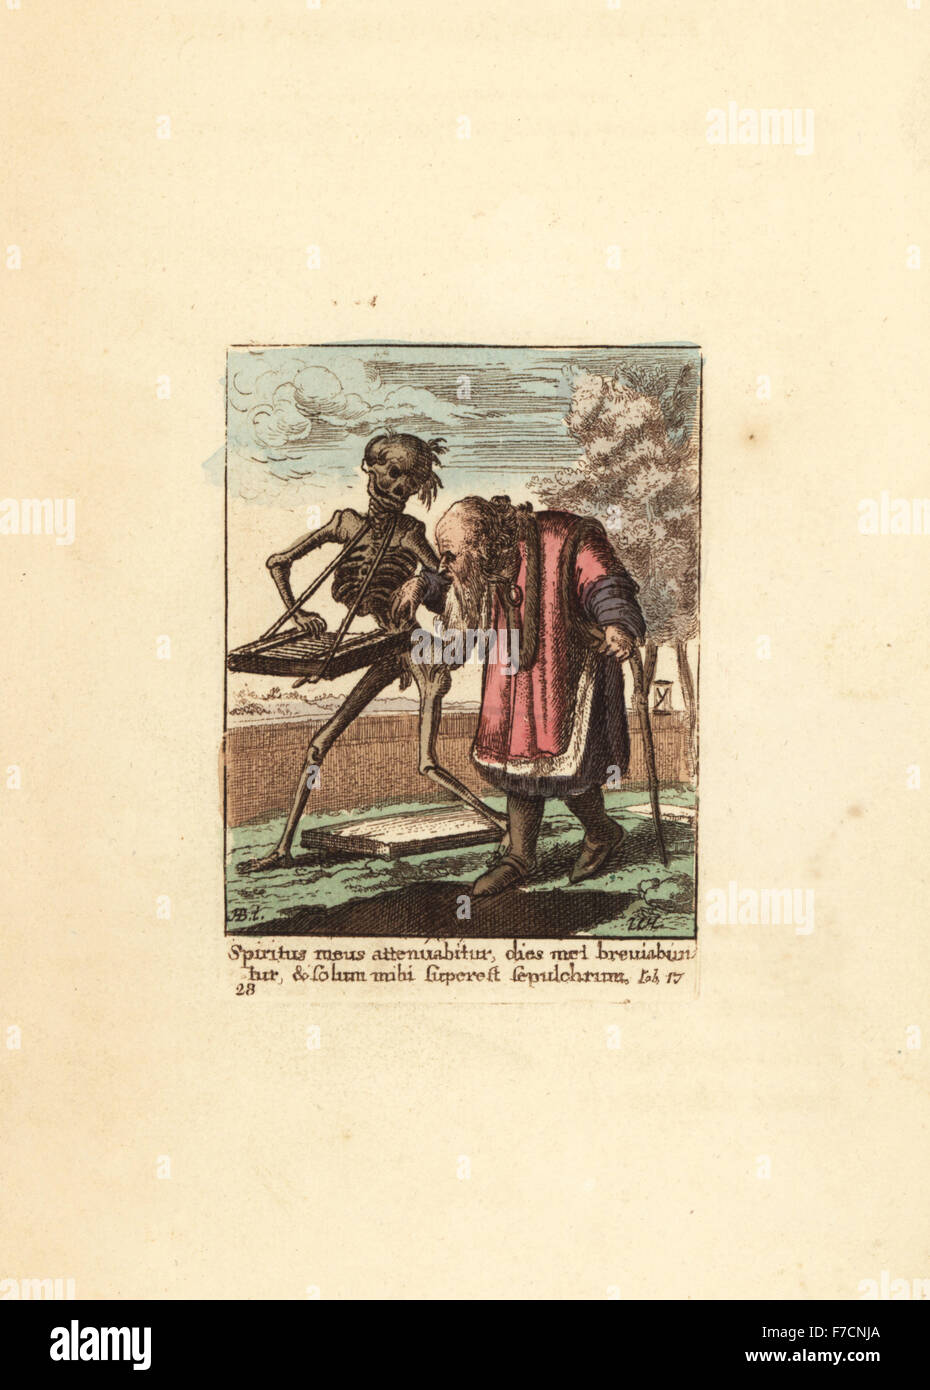 Squelette de la mort de la lecture d'un psaltérion comme il dirige un vieil homme dans sa tombe. La gravure sur cuivre coloriée par Wenceslaus Hollar à partir de la danse de la mort de Hans Holbein, Coxhead, Londres, 1816. Banque D'Images